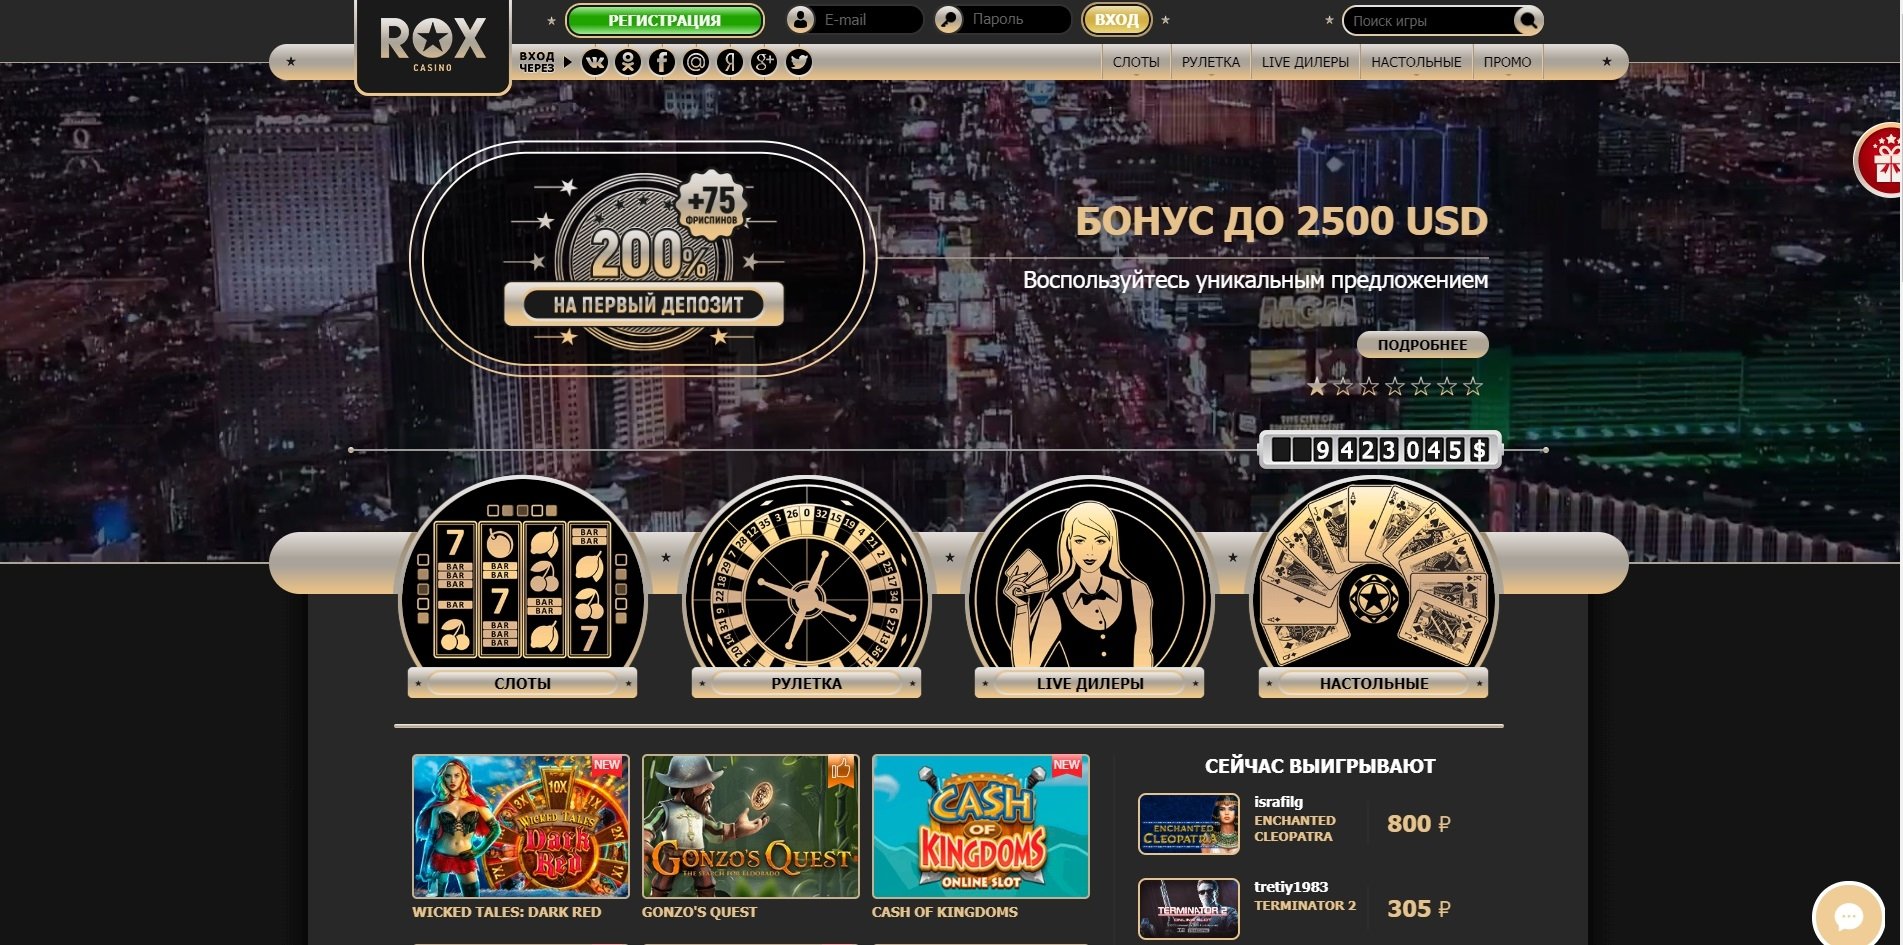 Топ казино онлайн rox лицензированный игровой клуб azino777